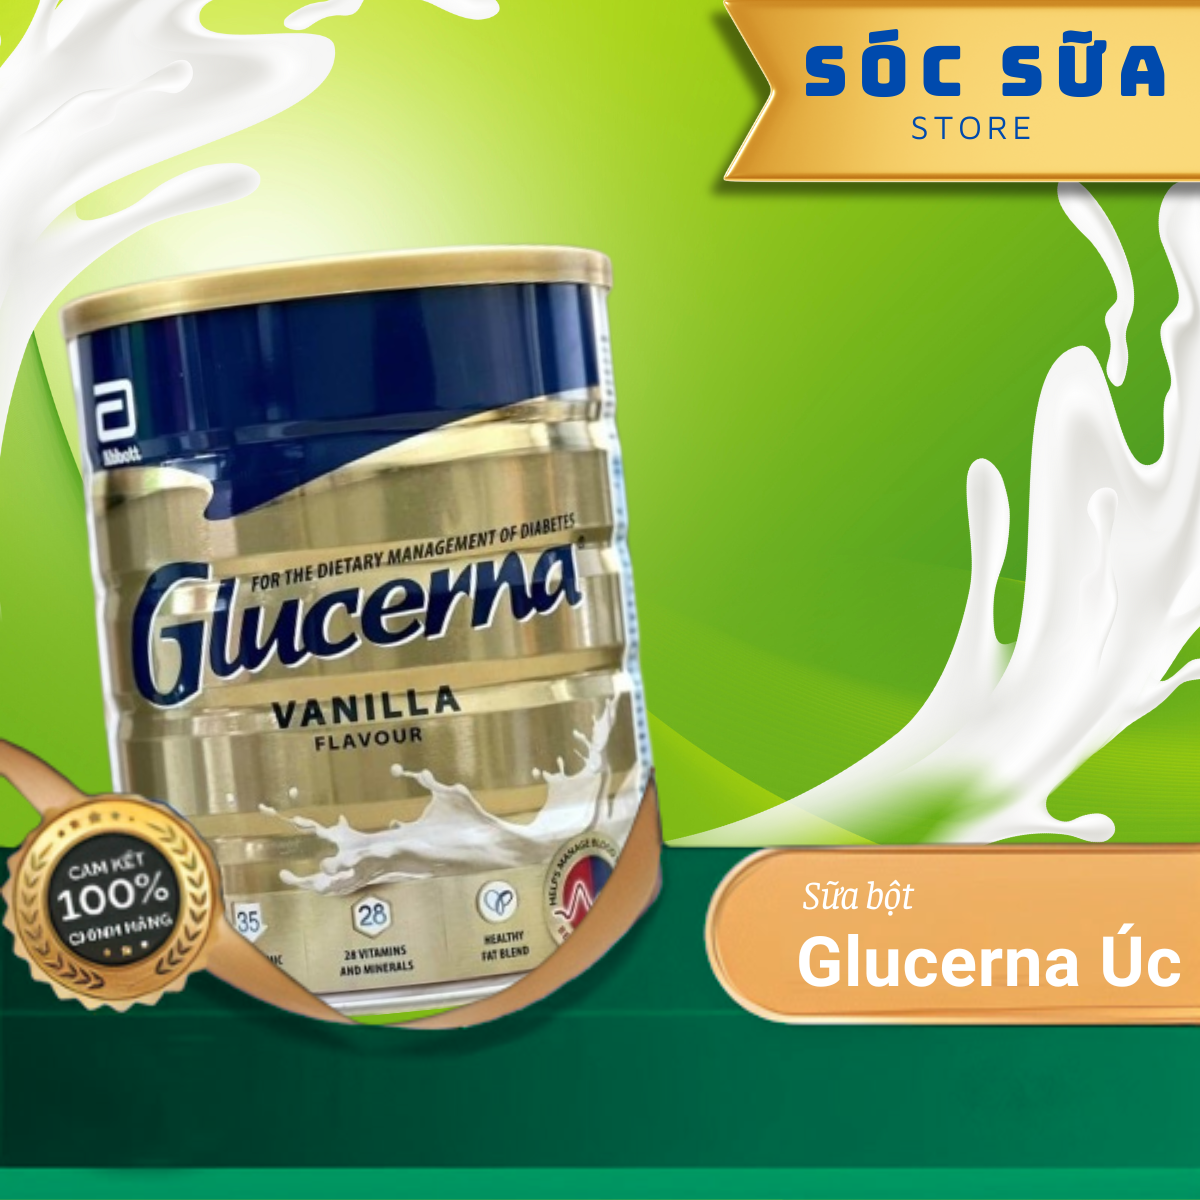 Sữa bột Glucerna Úc hộp 850g cung cấp dinh dưỡng dành cho người bệnh tiểu đường, hương Vani thơm ngon dễ uống